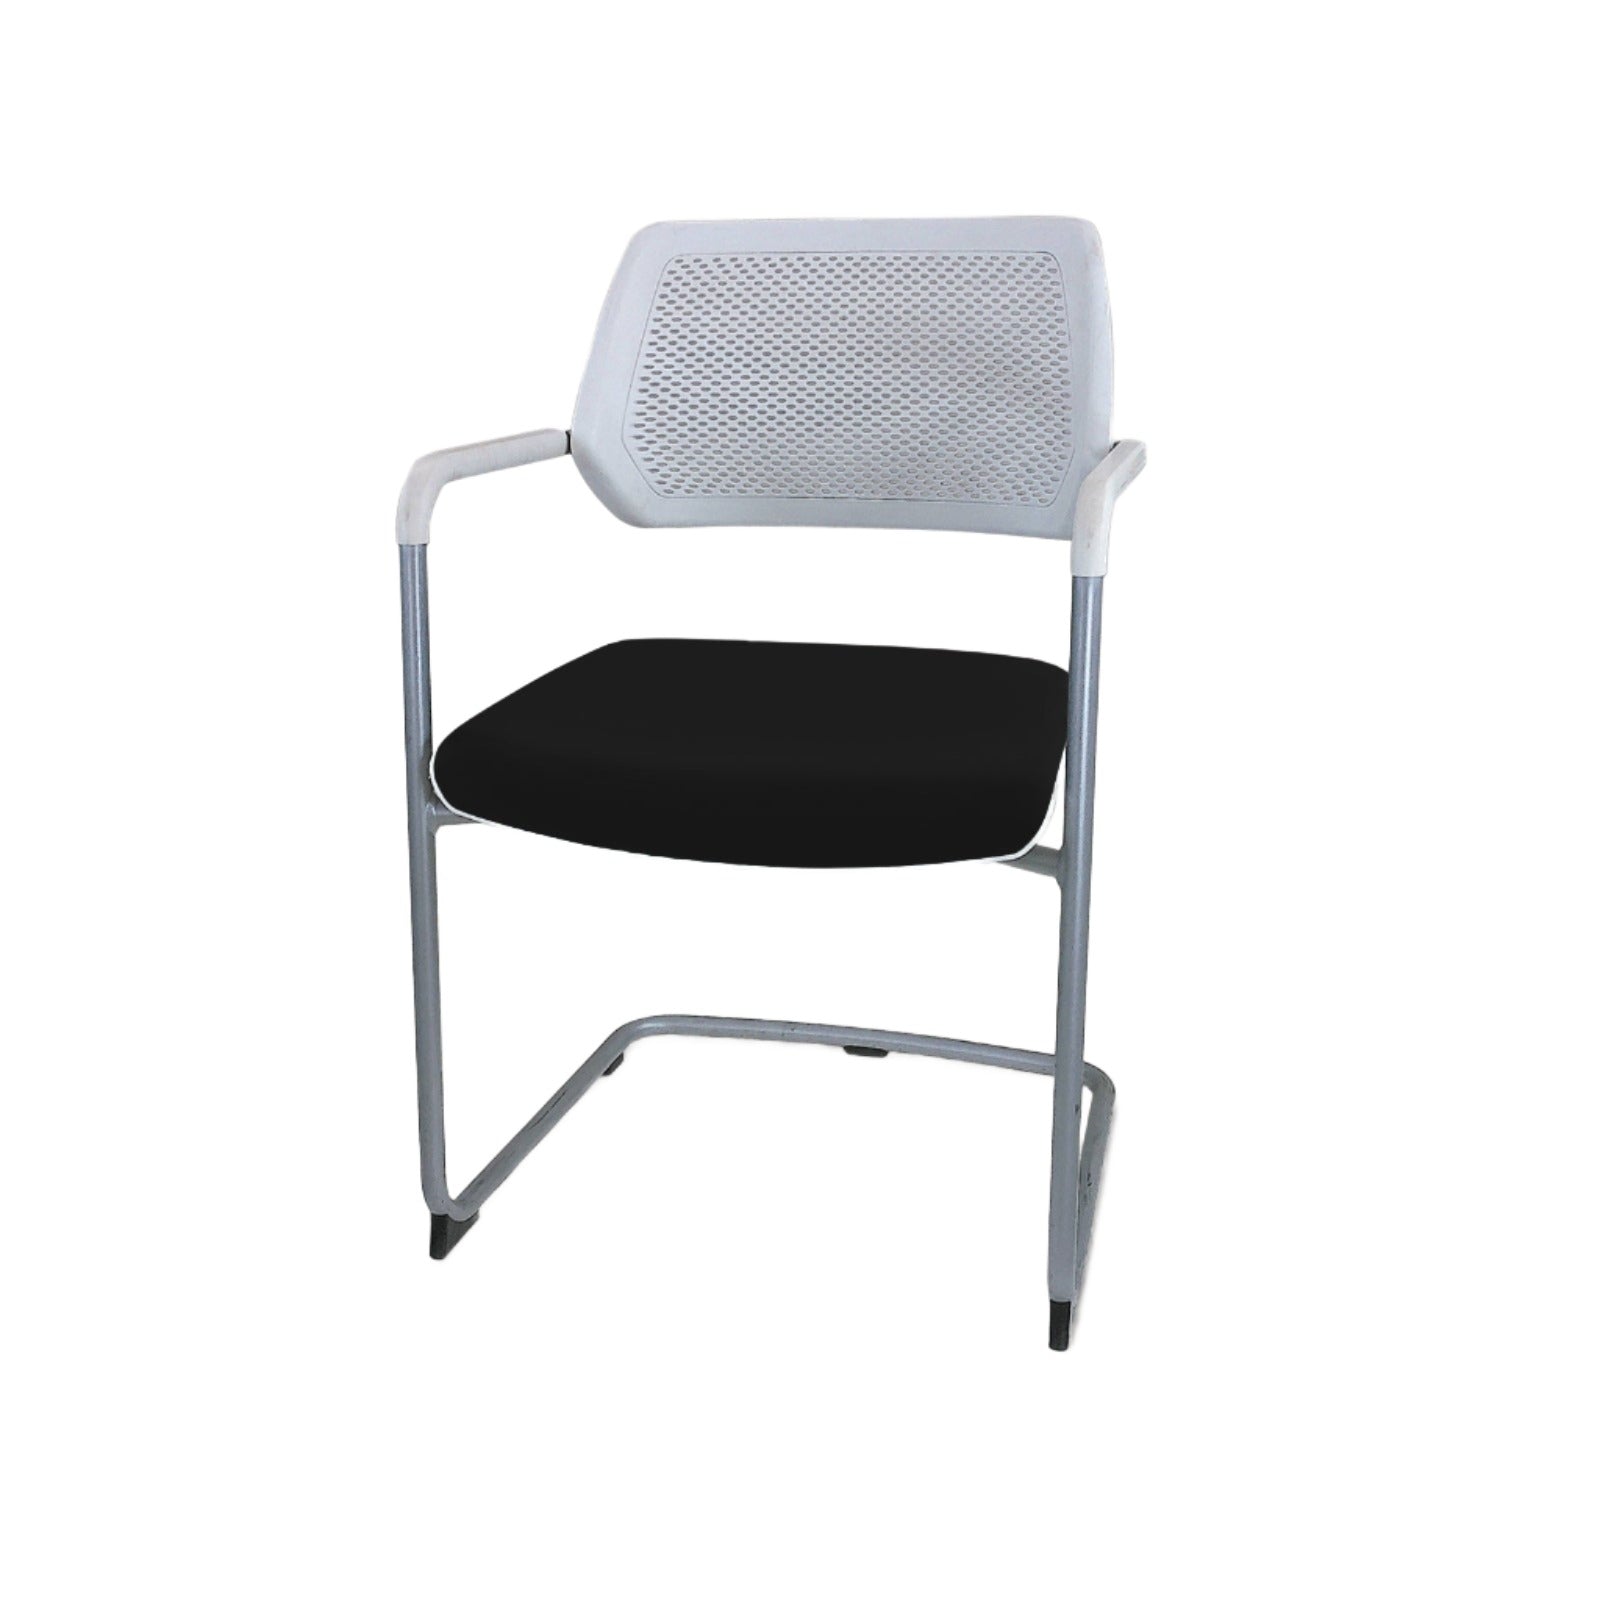 Steelcase : Qivi - Chaise de réunion sur base luge - Remis à neuf